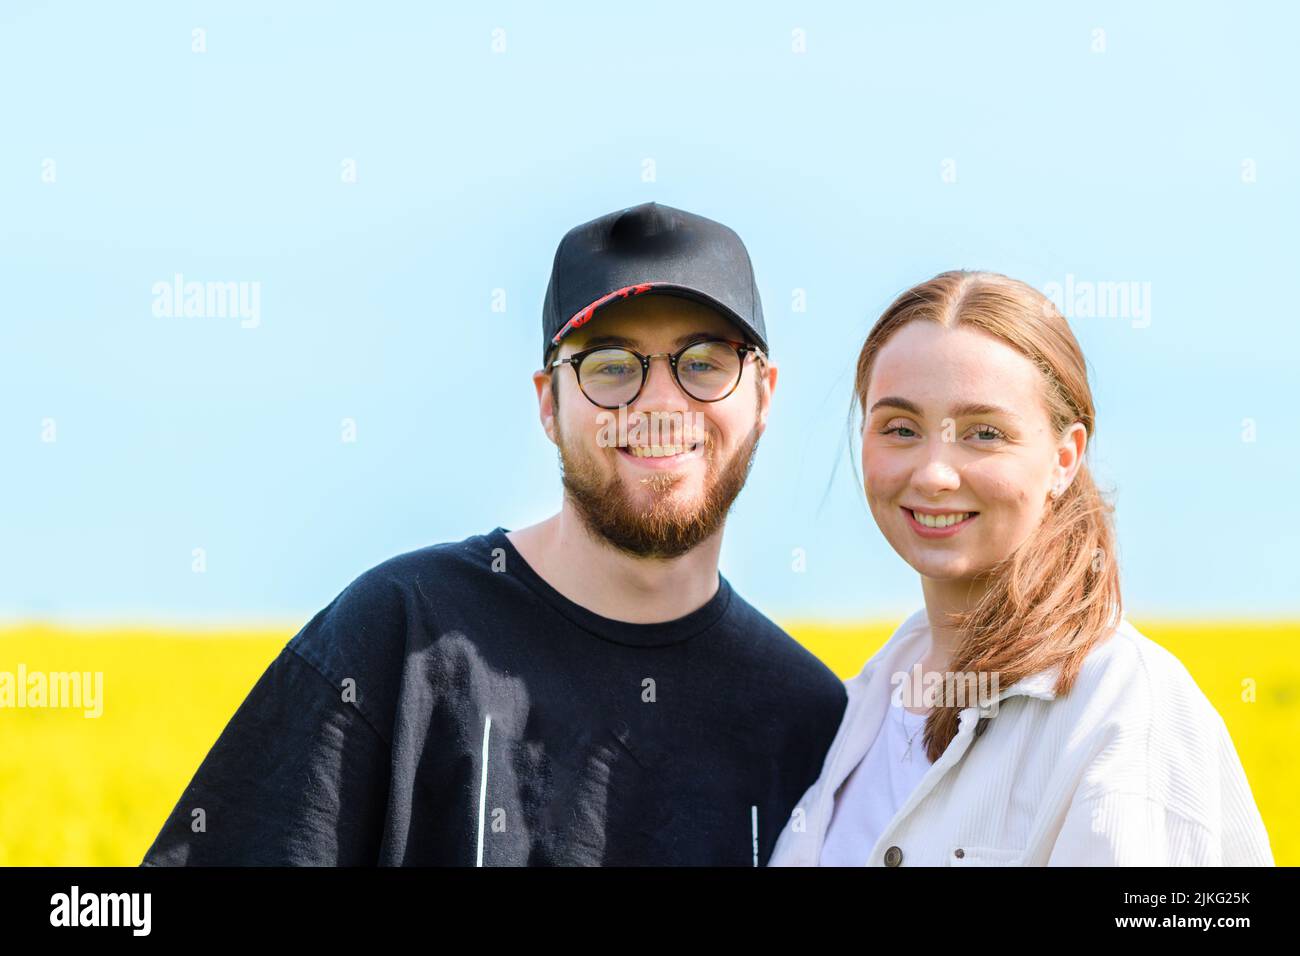 Ein glückliches junges kaukasisches Paar, das in einem gelben Feld posiert Stockfoto